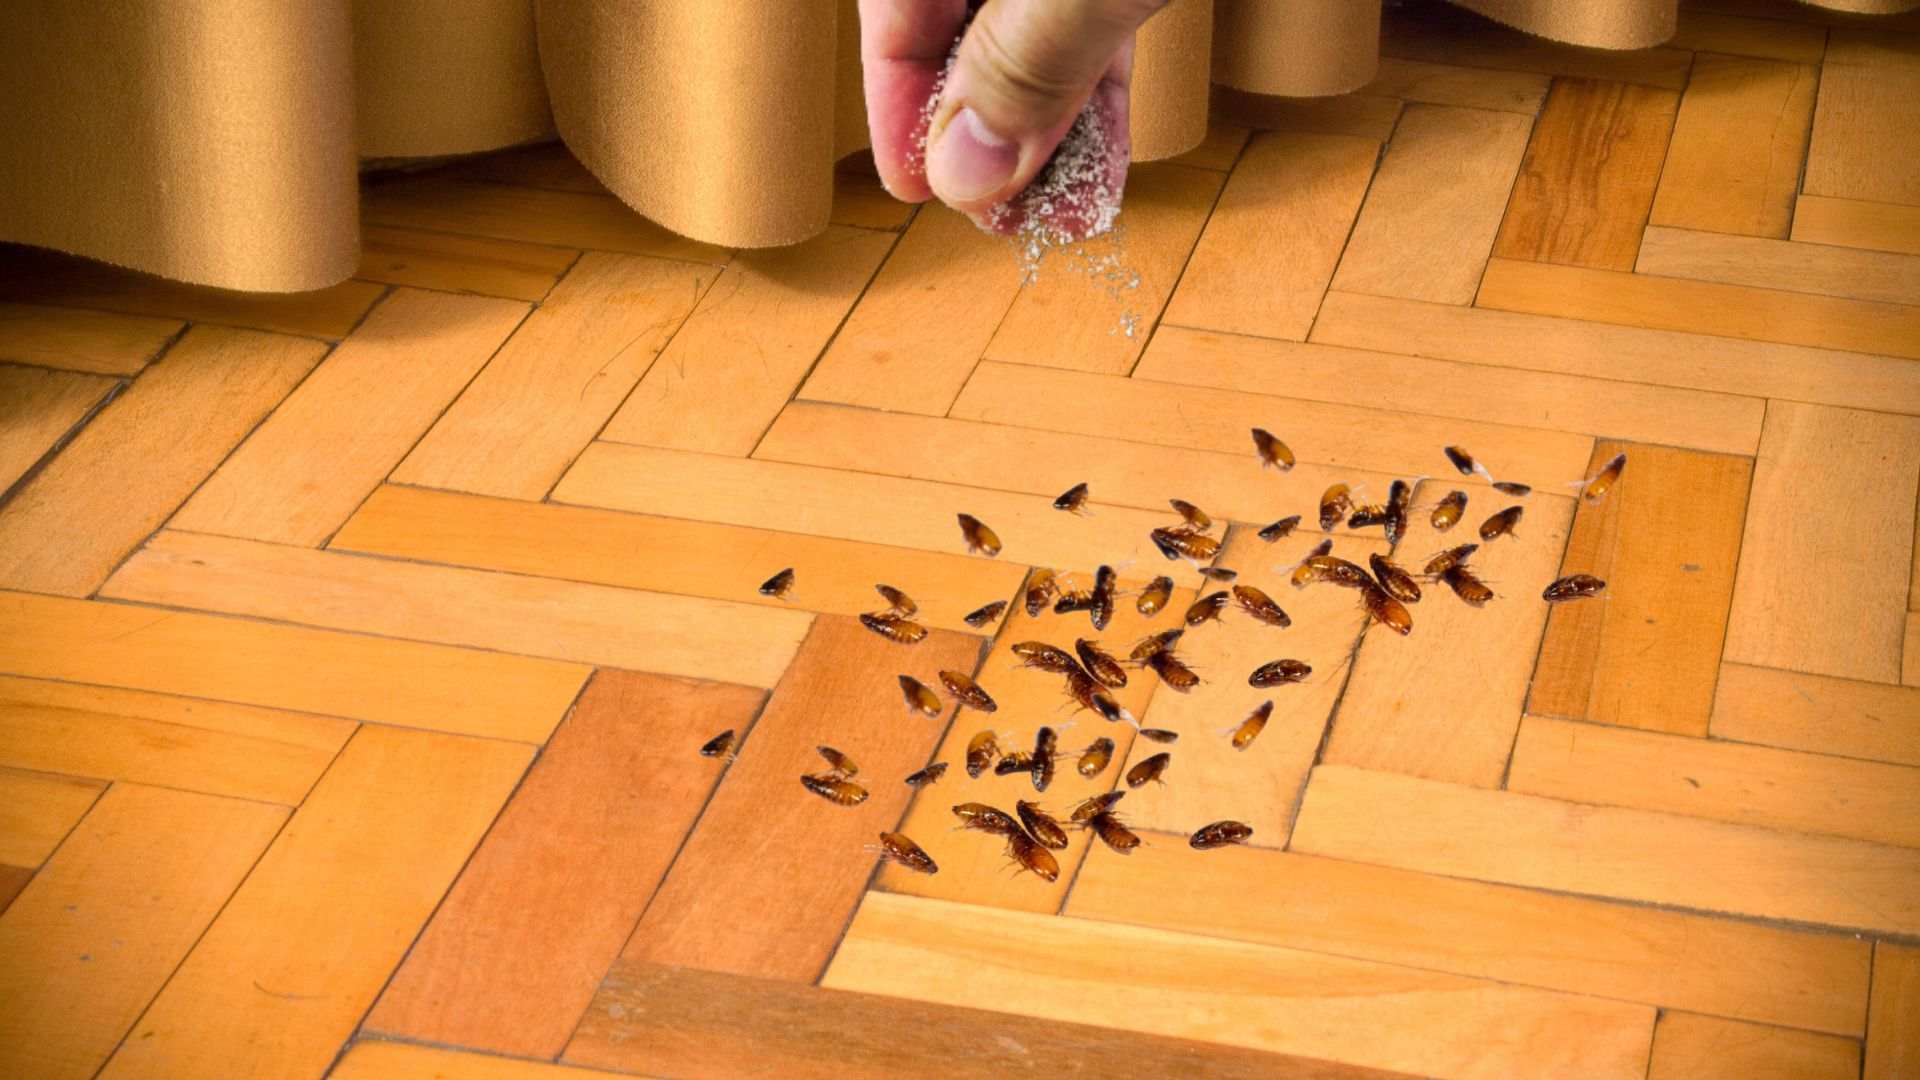 Does Salt Kill Fleas on Hardwood Floors